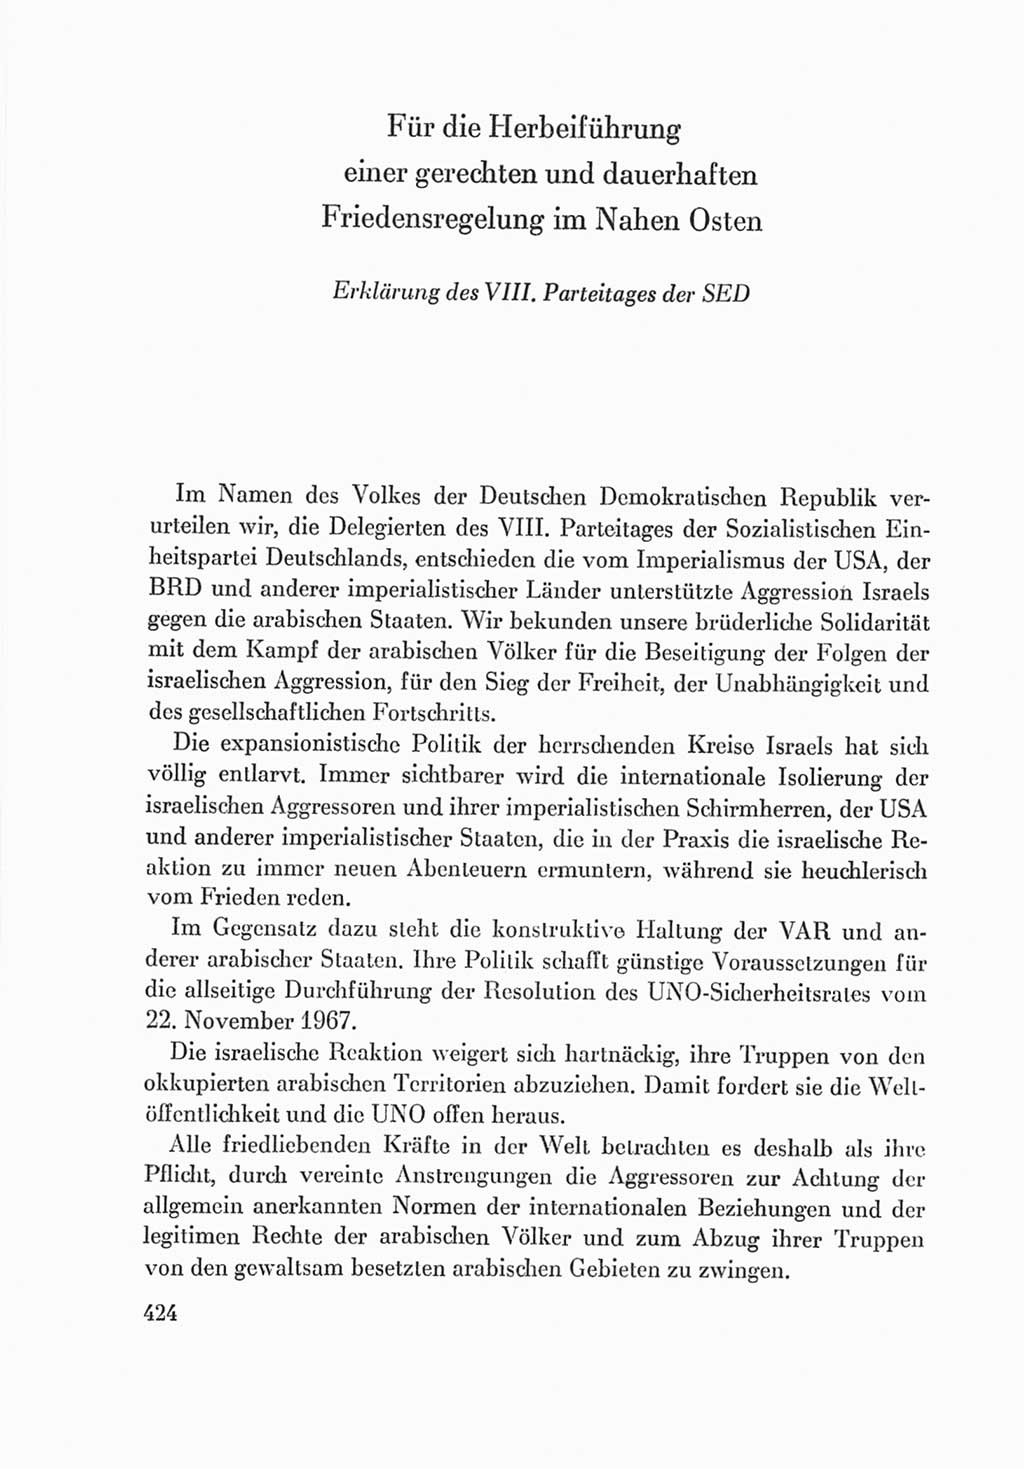 Protokoll der Verhandlungen des Ⅷ. Parteitages der Sozialistischen Einheitspartei Deutschlands (SED) [Deutsche Demokratische Republik (DDR)] 1971, Band 2, Seite 424 (Prot. Verh. Ⅷ. PT SED DDR 1971, Bd. 2, S. 424)